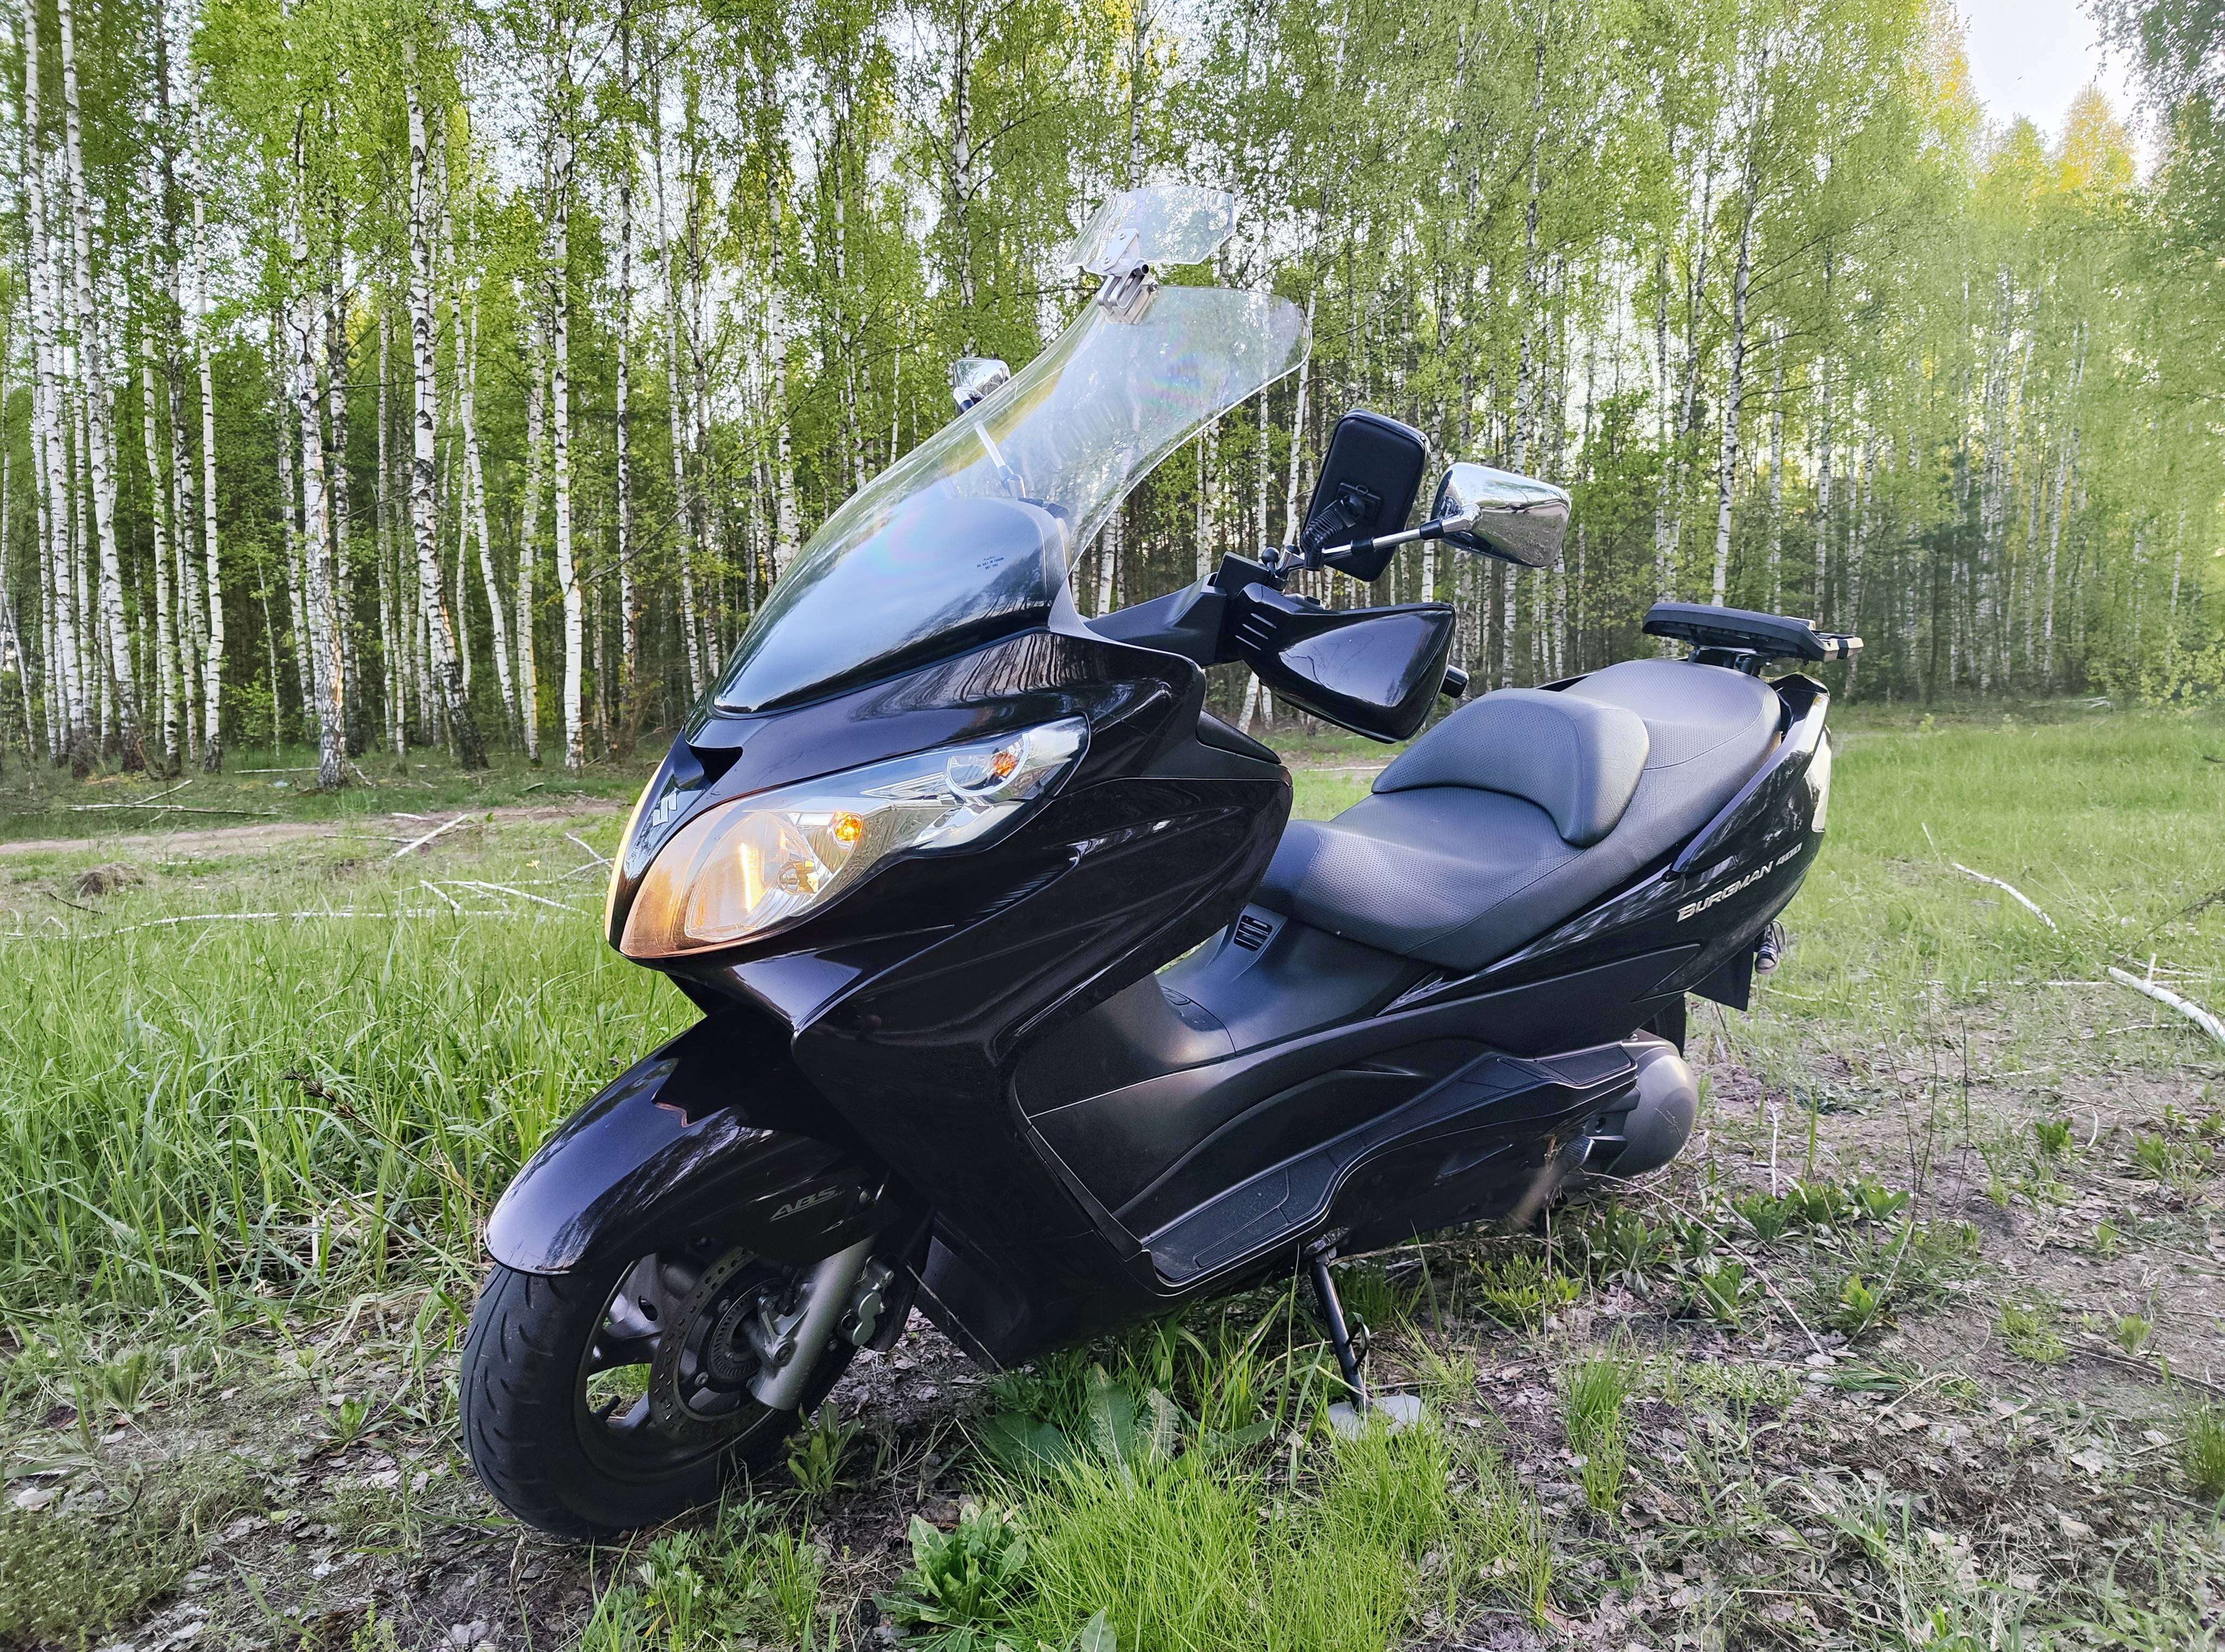 Купить скутер Suzuki Burgman в Беларуси в кредит - цены, характеристики, фото. в Беларуси в кредит